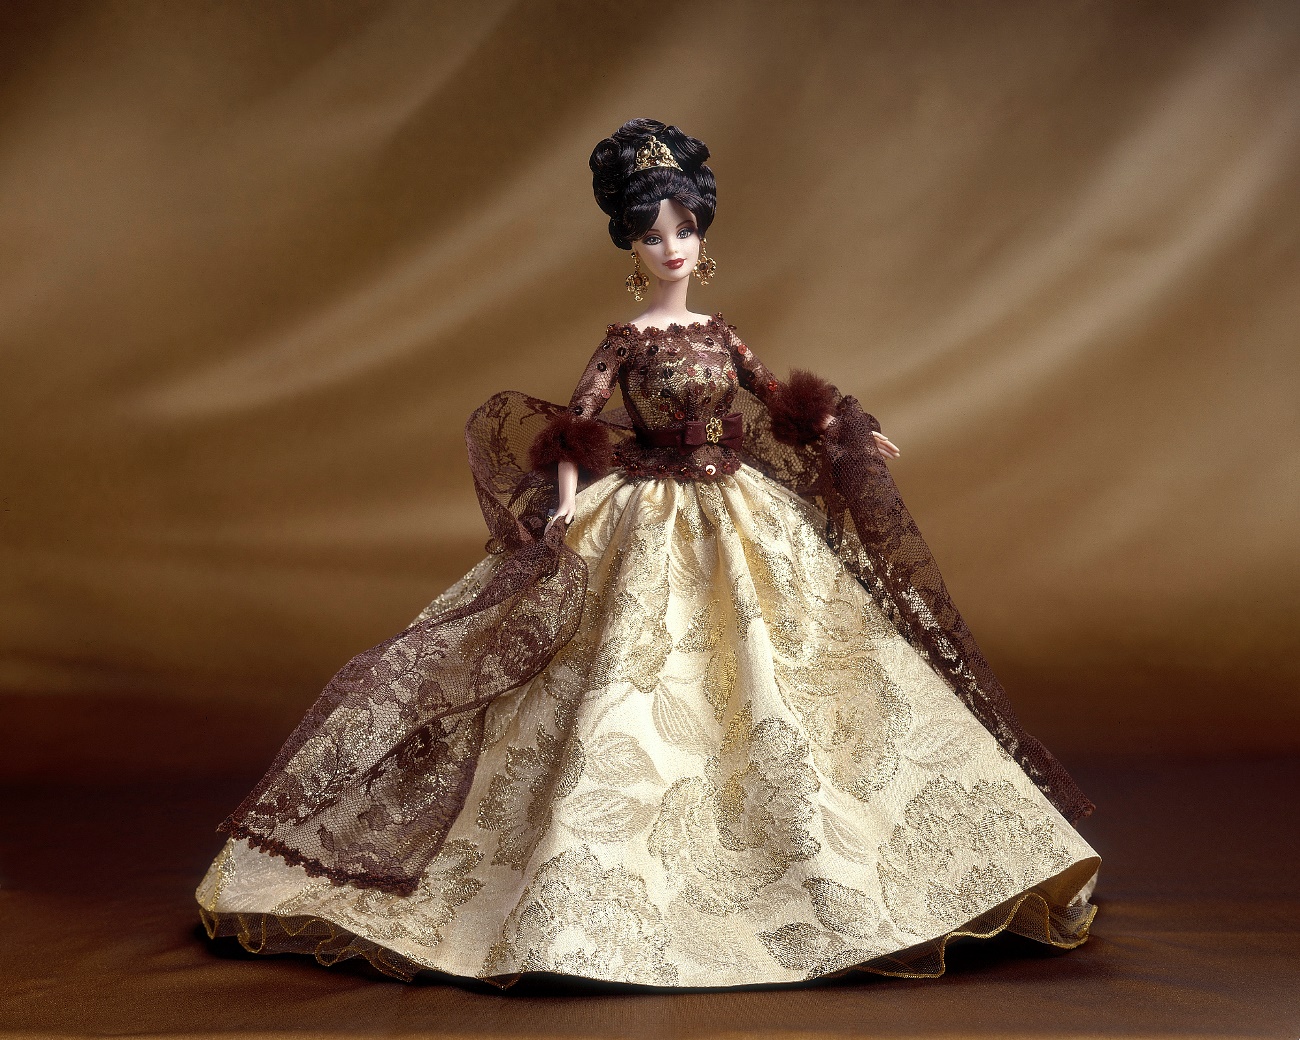 Barbie Designer Collection - Monique Lhuillier Bride Barbie Doll